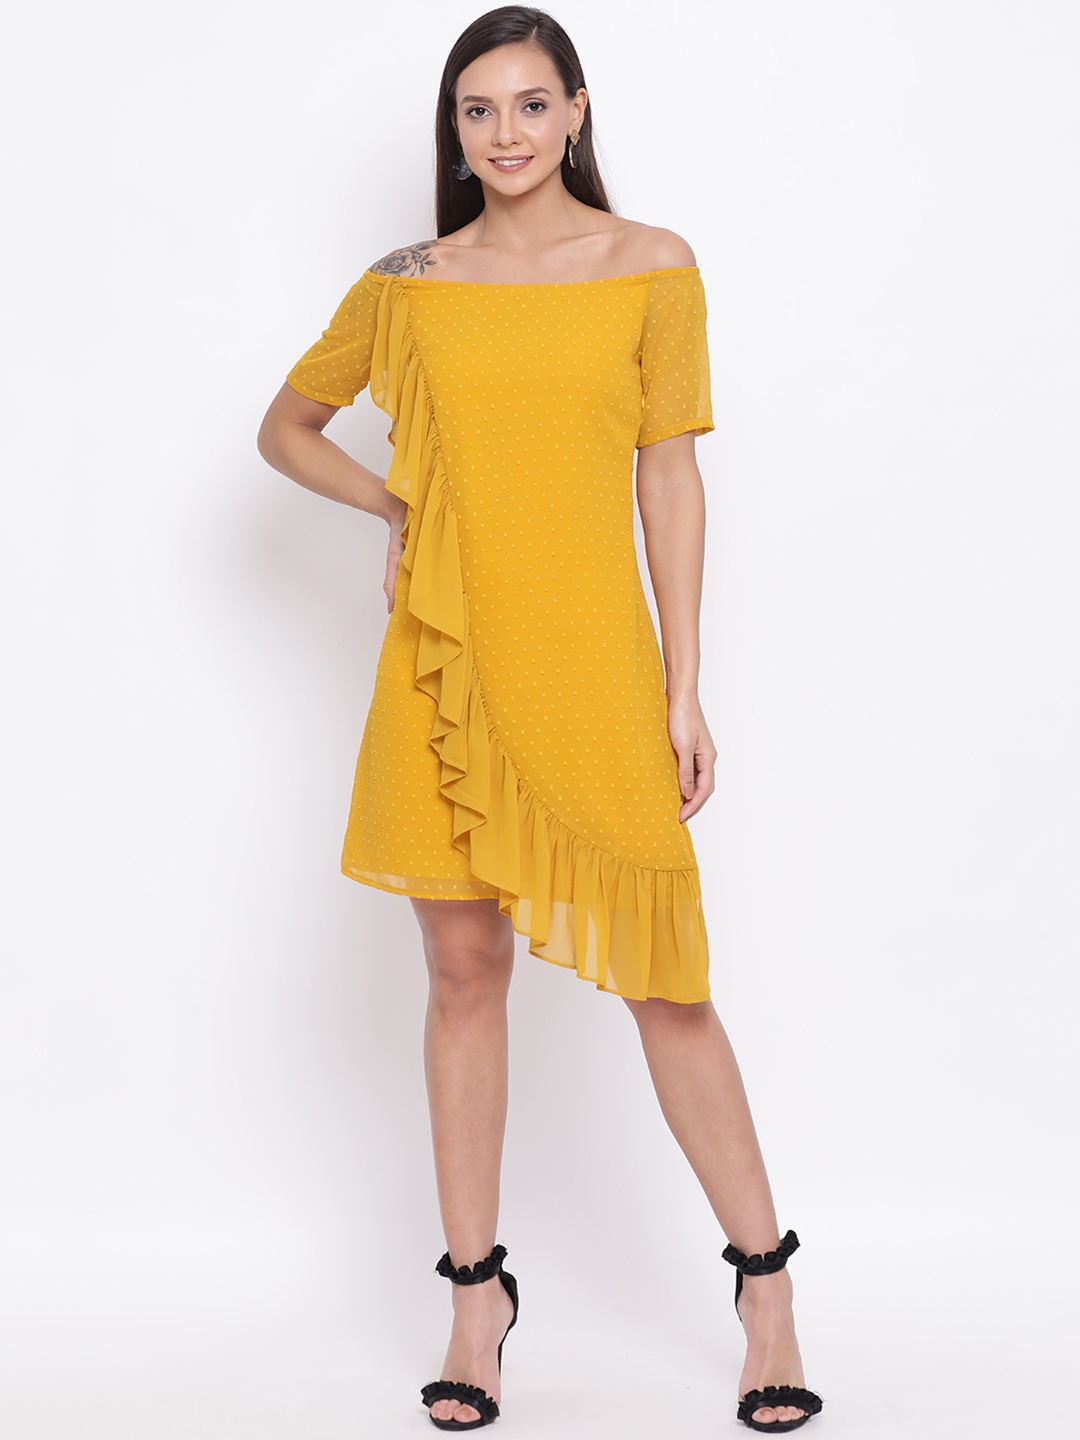 DRAAX fashions | Draax Fashions Yellow Skater Dress